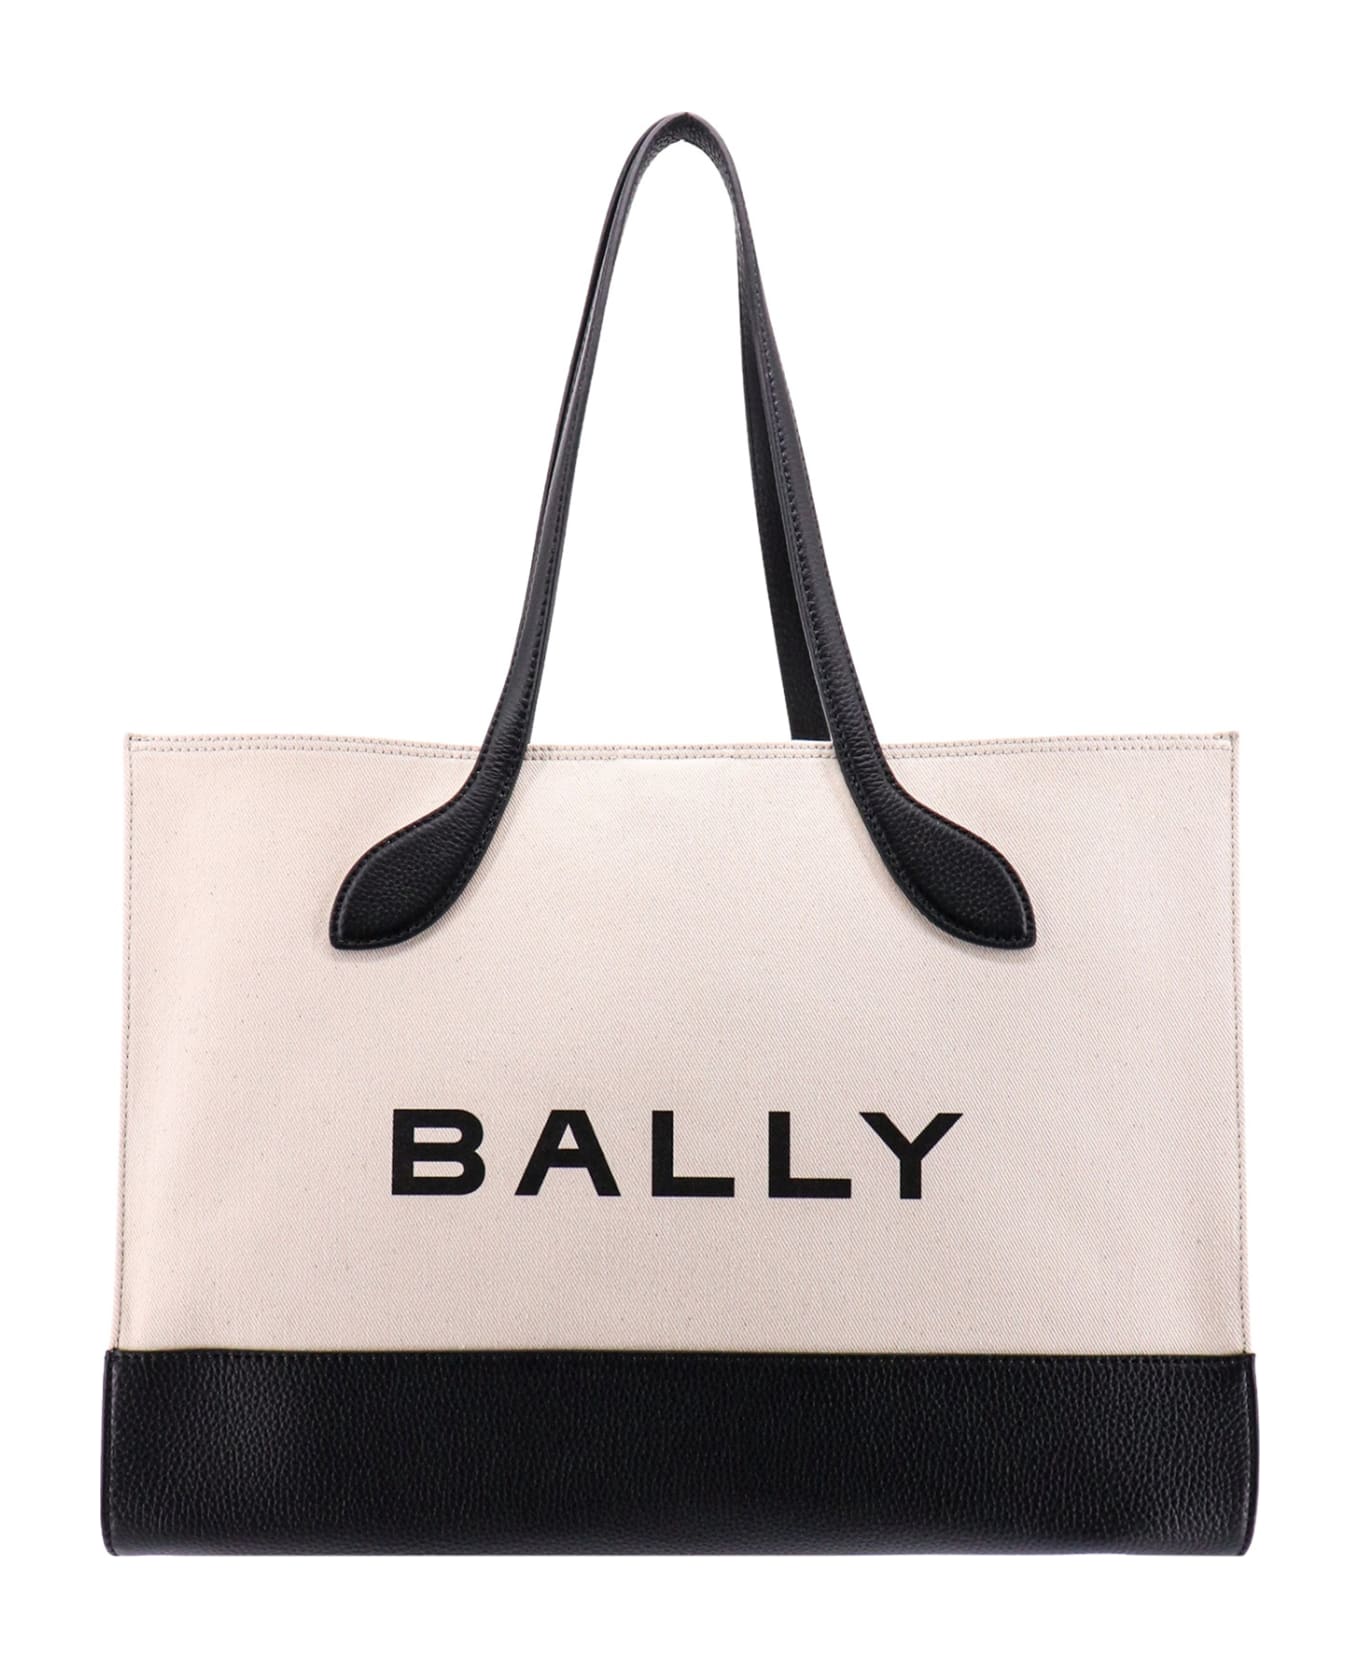 Bally Shoulder Bag - Natural